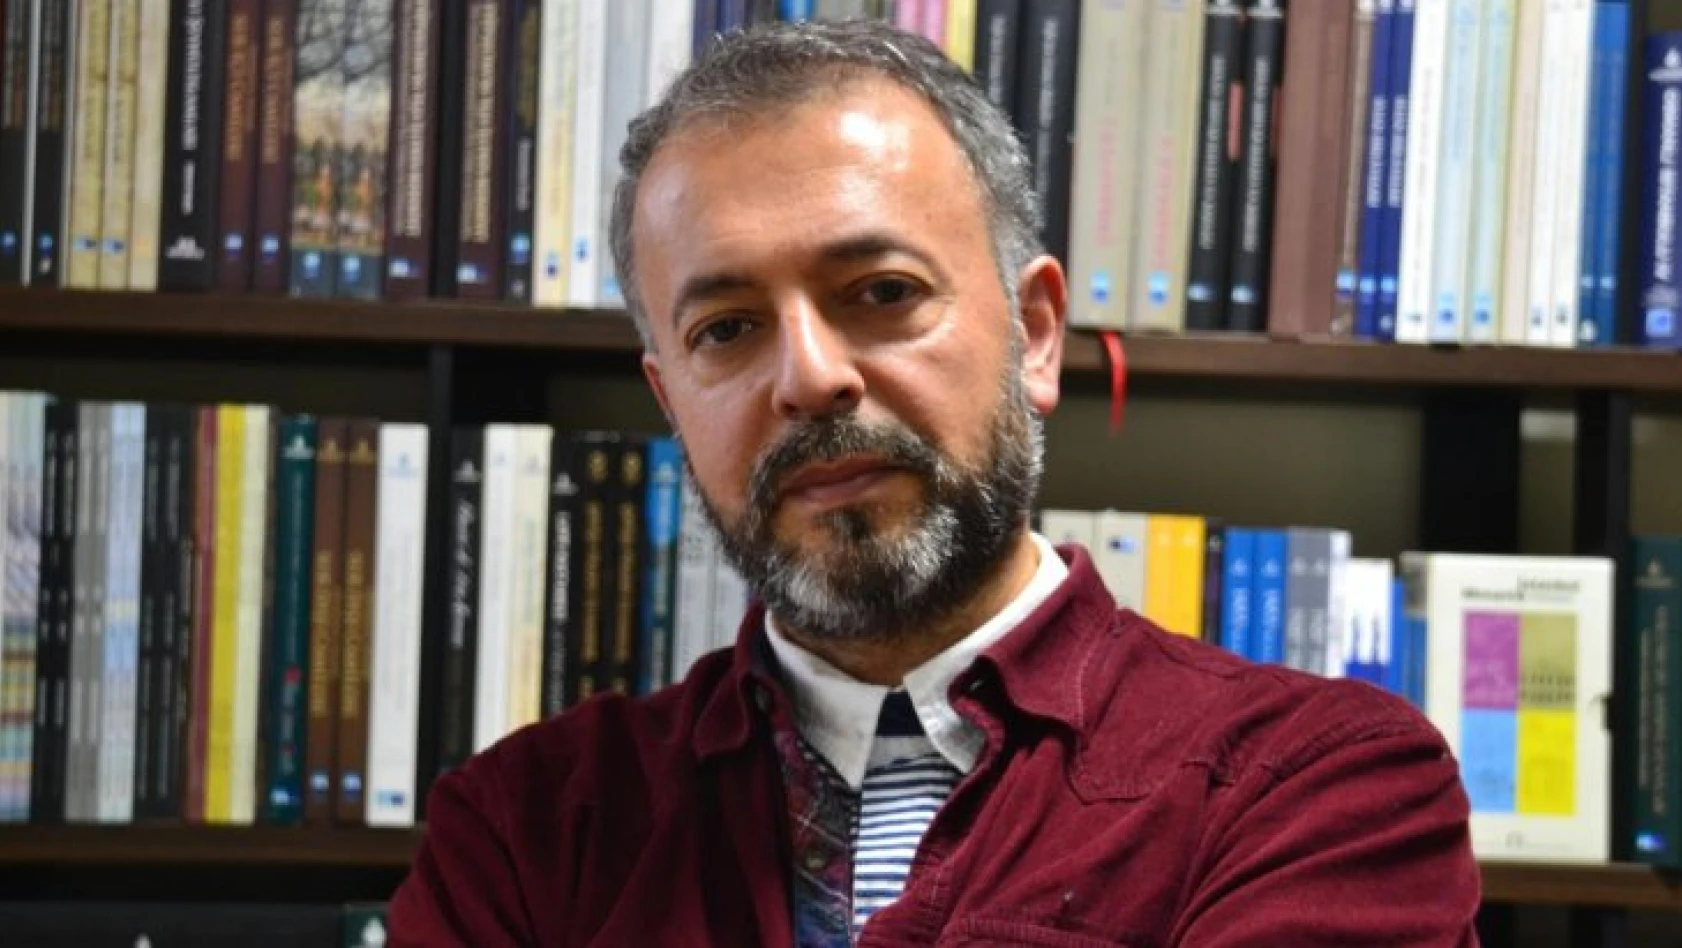 Yazar Mevlana İdris Zengin, yaşamını yitirdi